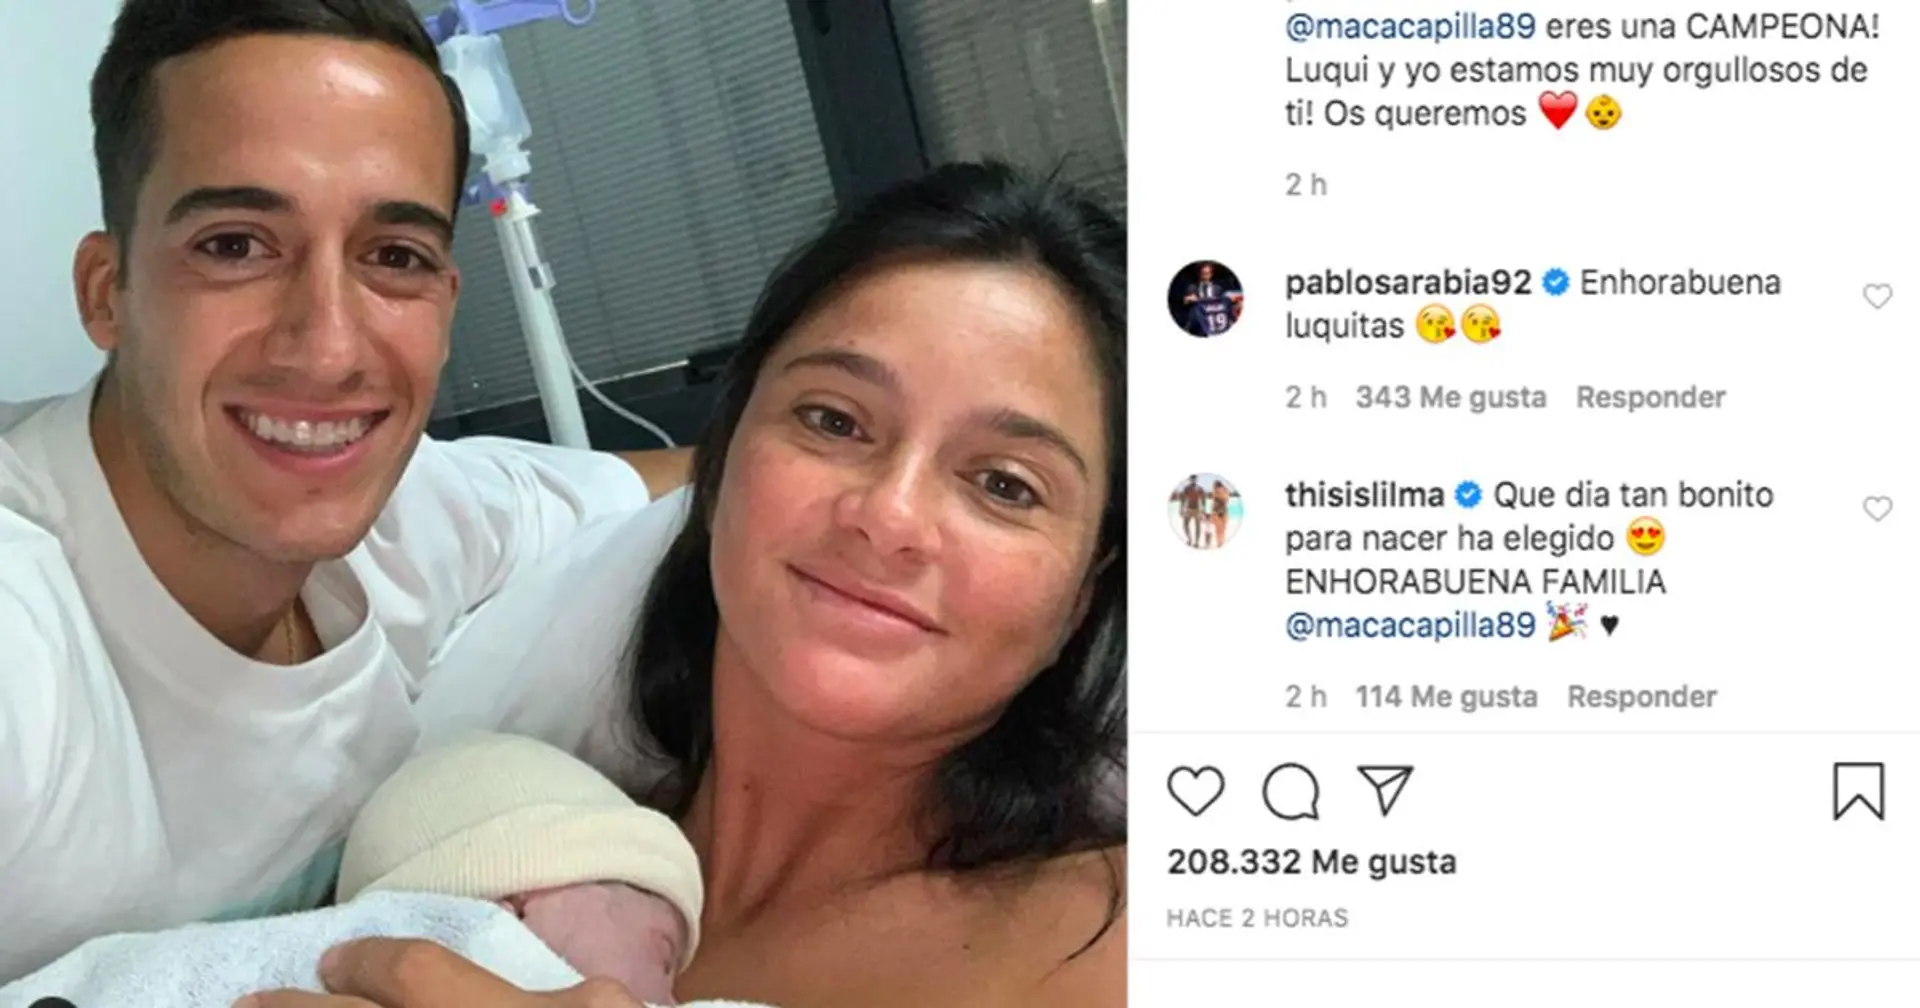 لوكاس فاسكيز يرحب بإضافة جديدة لعائلته : إنها طفلتي الجميلة  👶 !